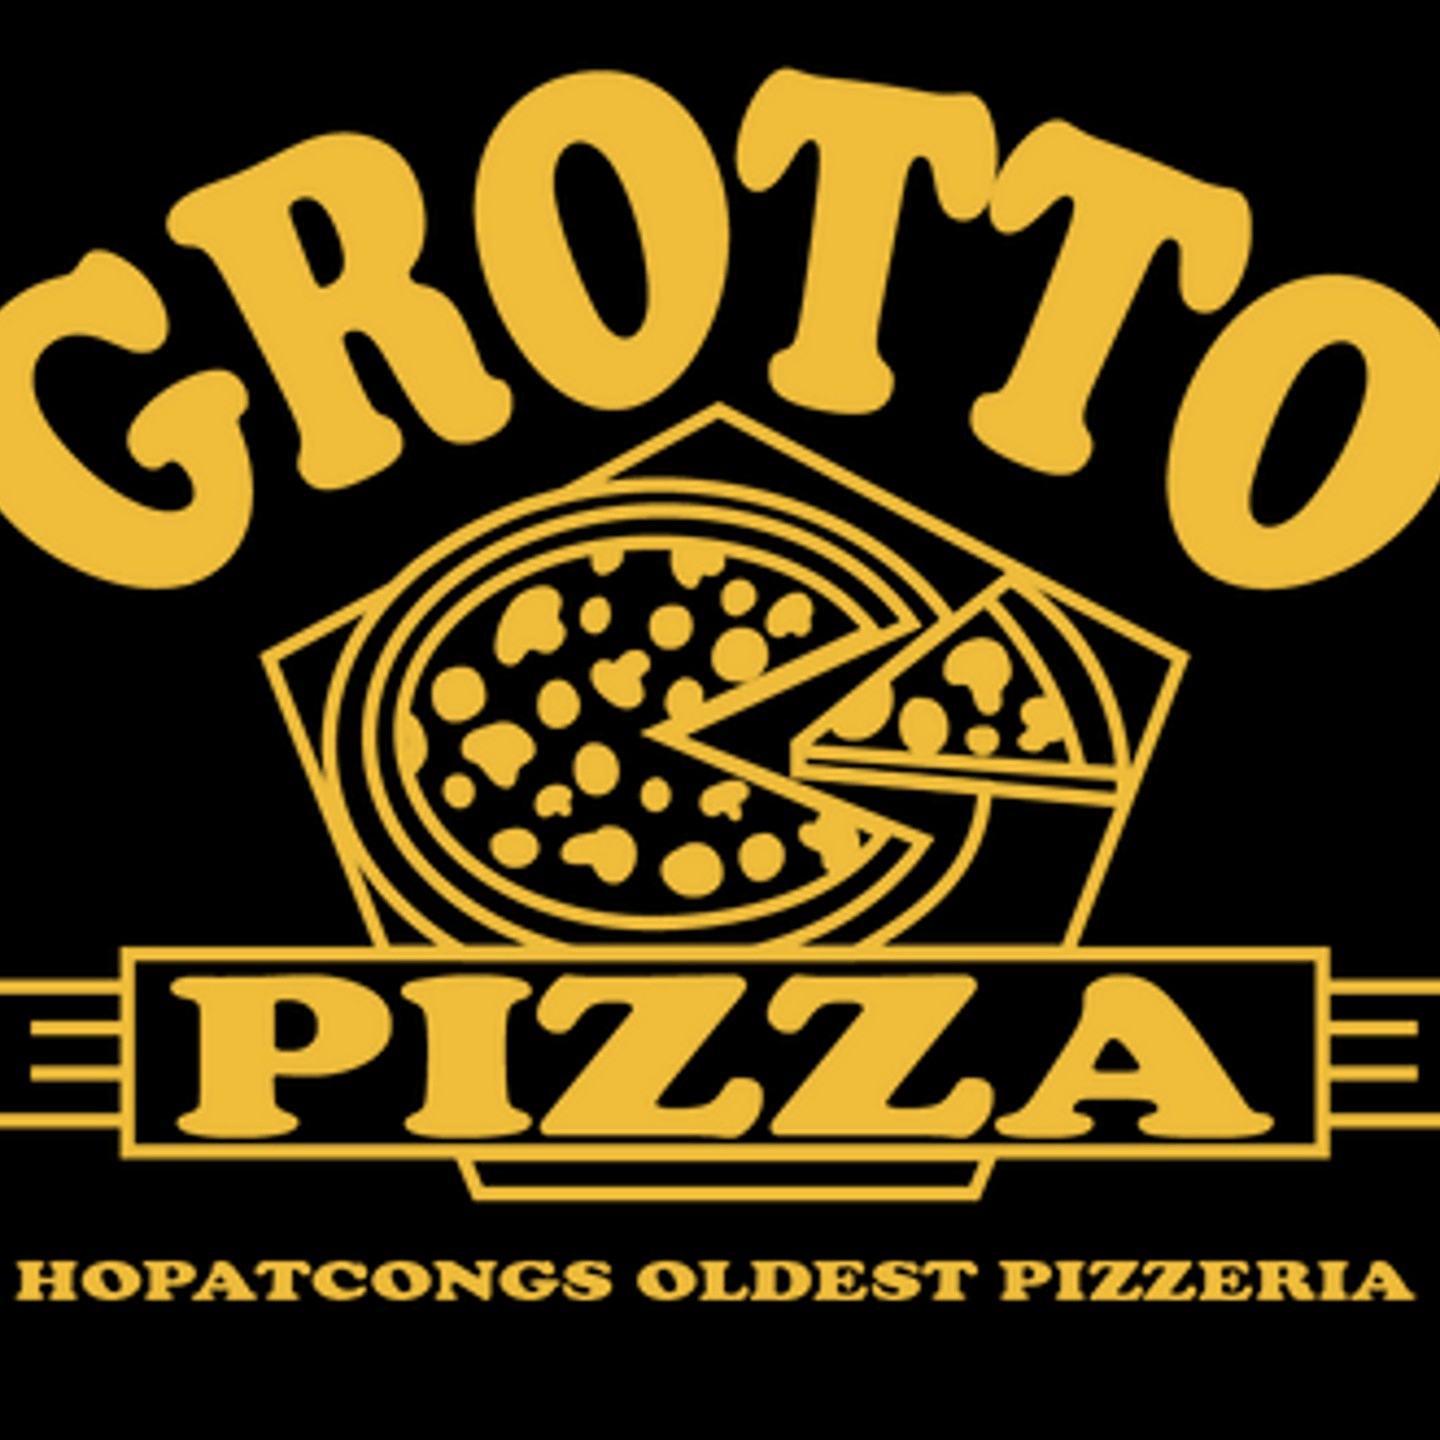 Hopatcong's Oldest Pizzeria!